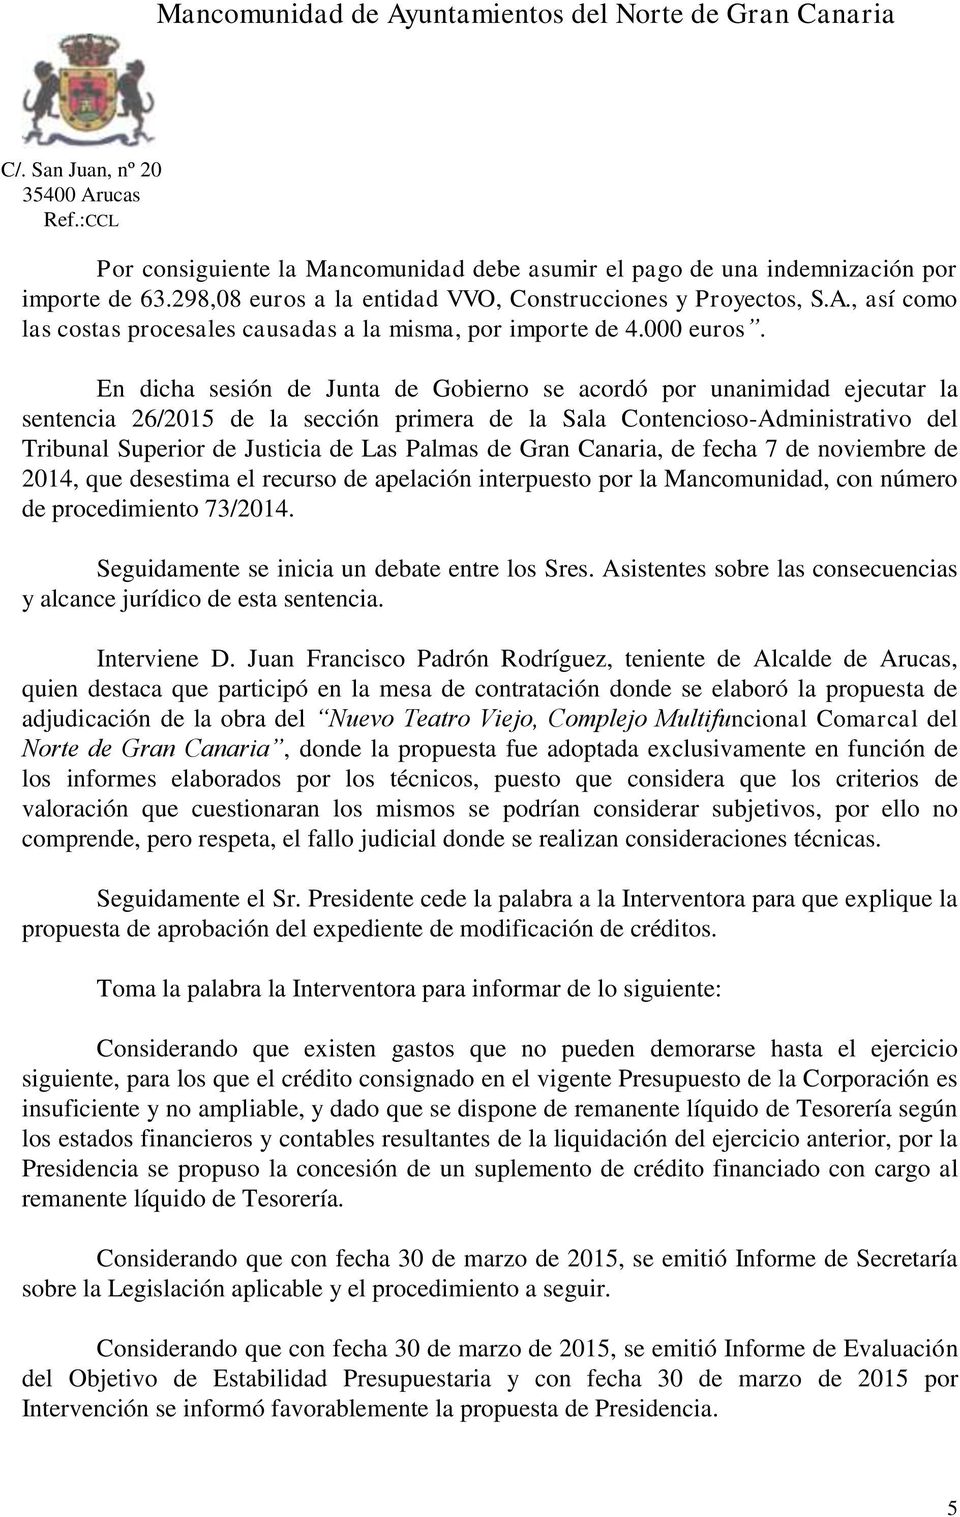 En dicha sesión de Junta de Gobierno se acordó por unanimidad ejecutar la sentencia 26/2015 de la sección primera de la Sala Contencioso-Administrativo del Tribunal Superior de Justicia de Las Palmas